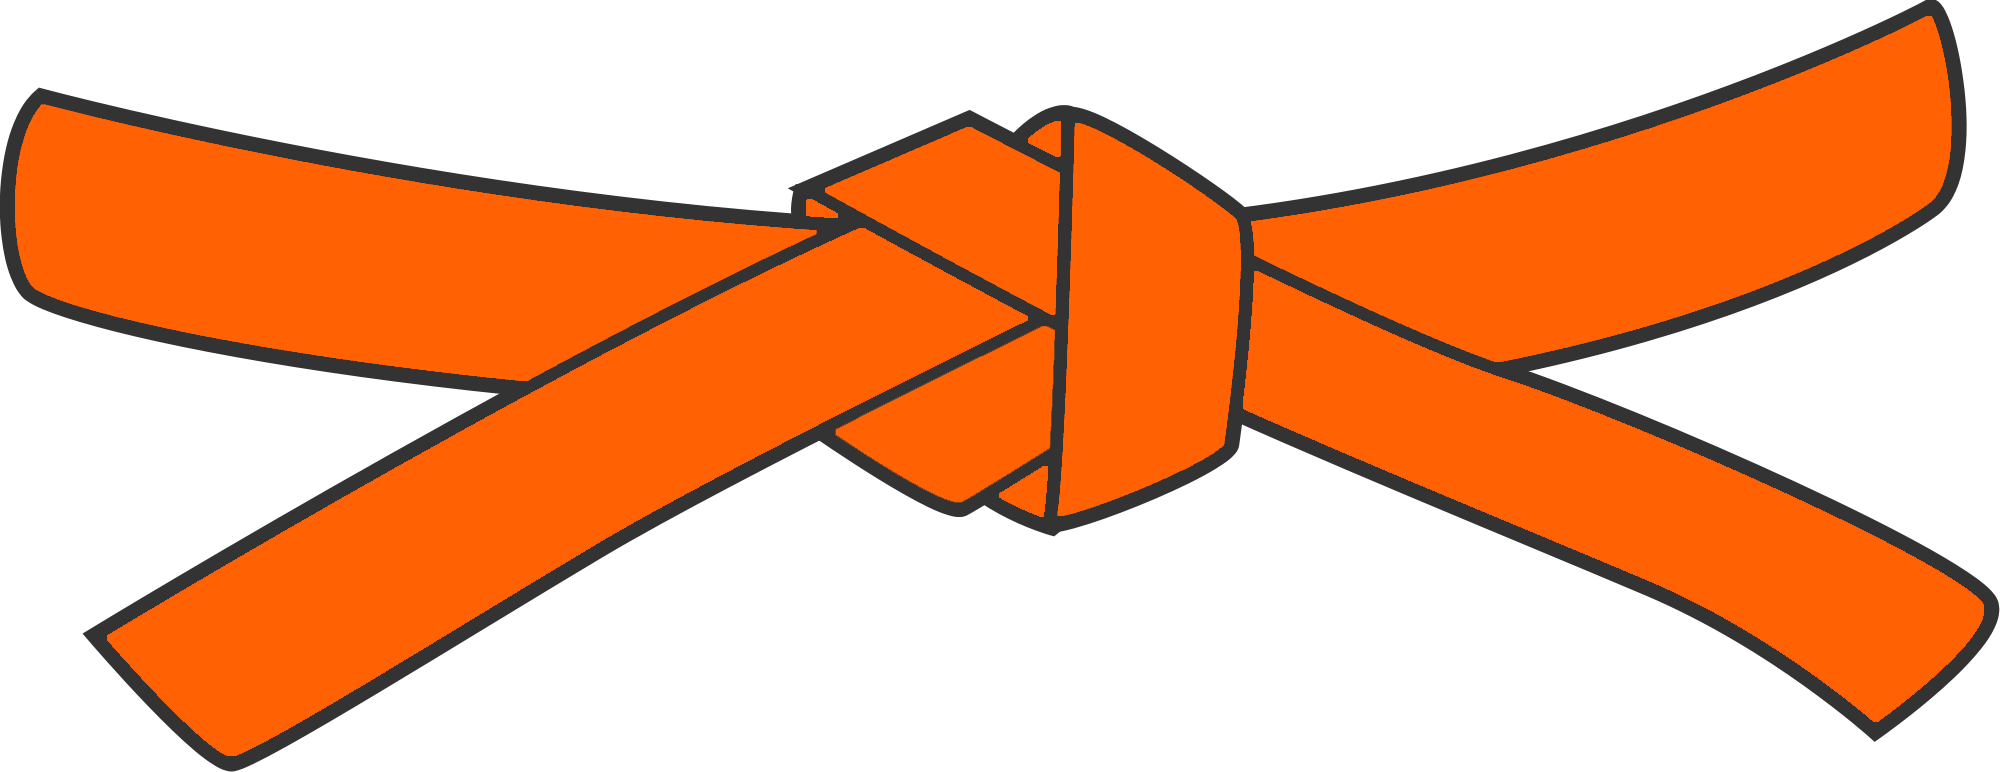 Branch Orange - Orange Belt Martial Arts (2000x772)